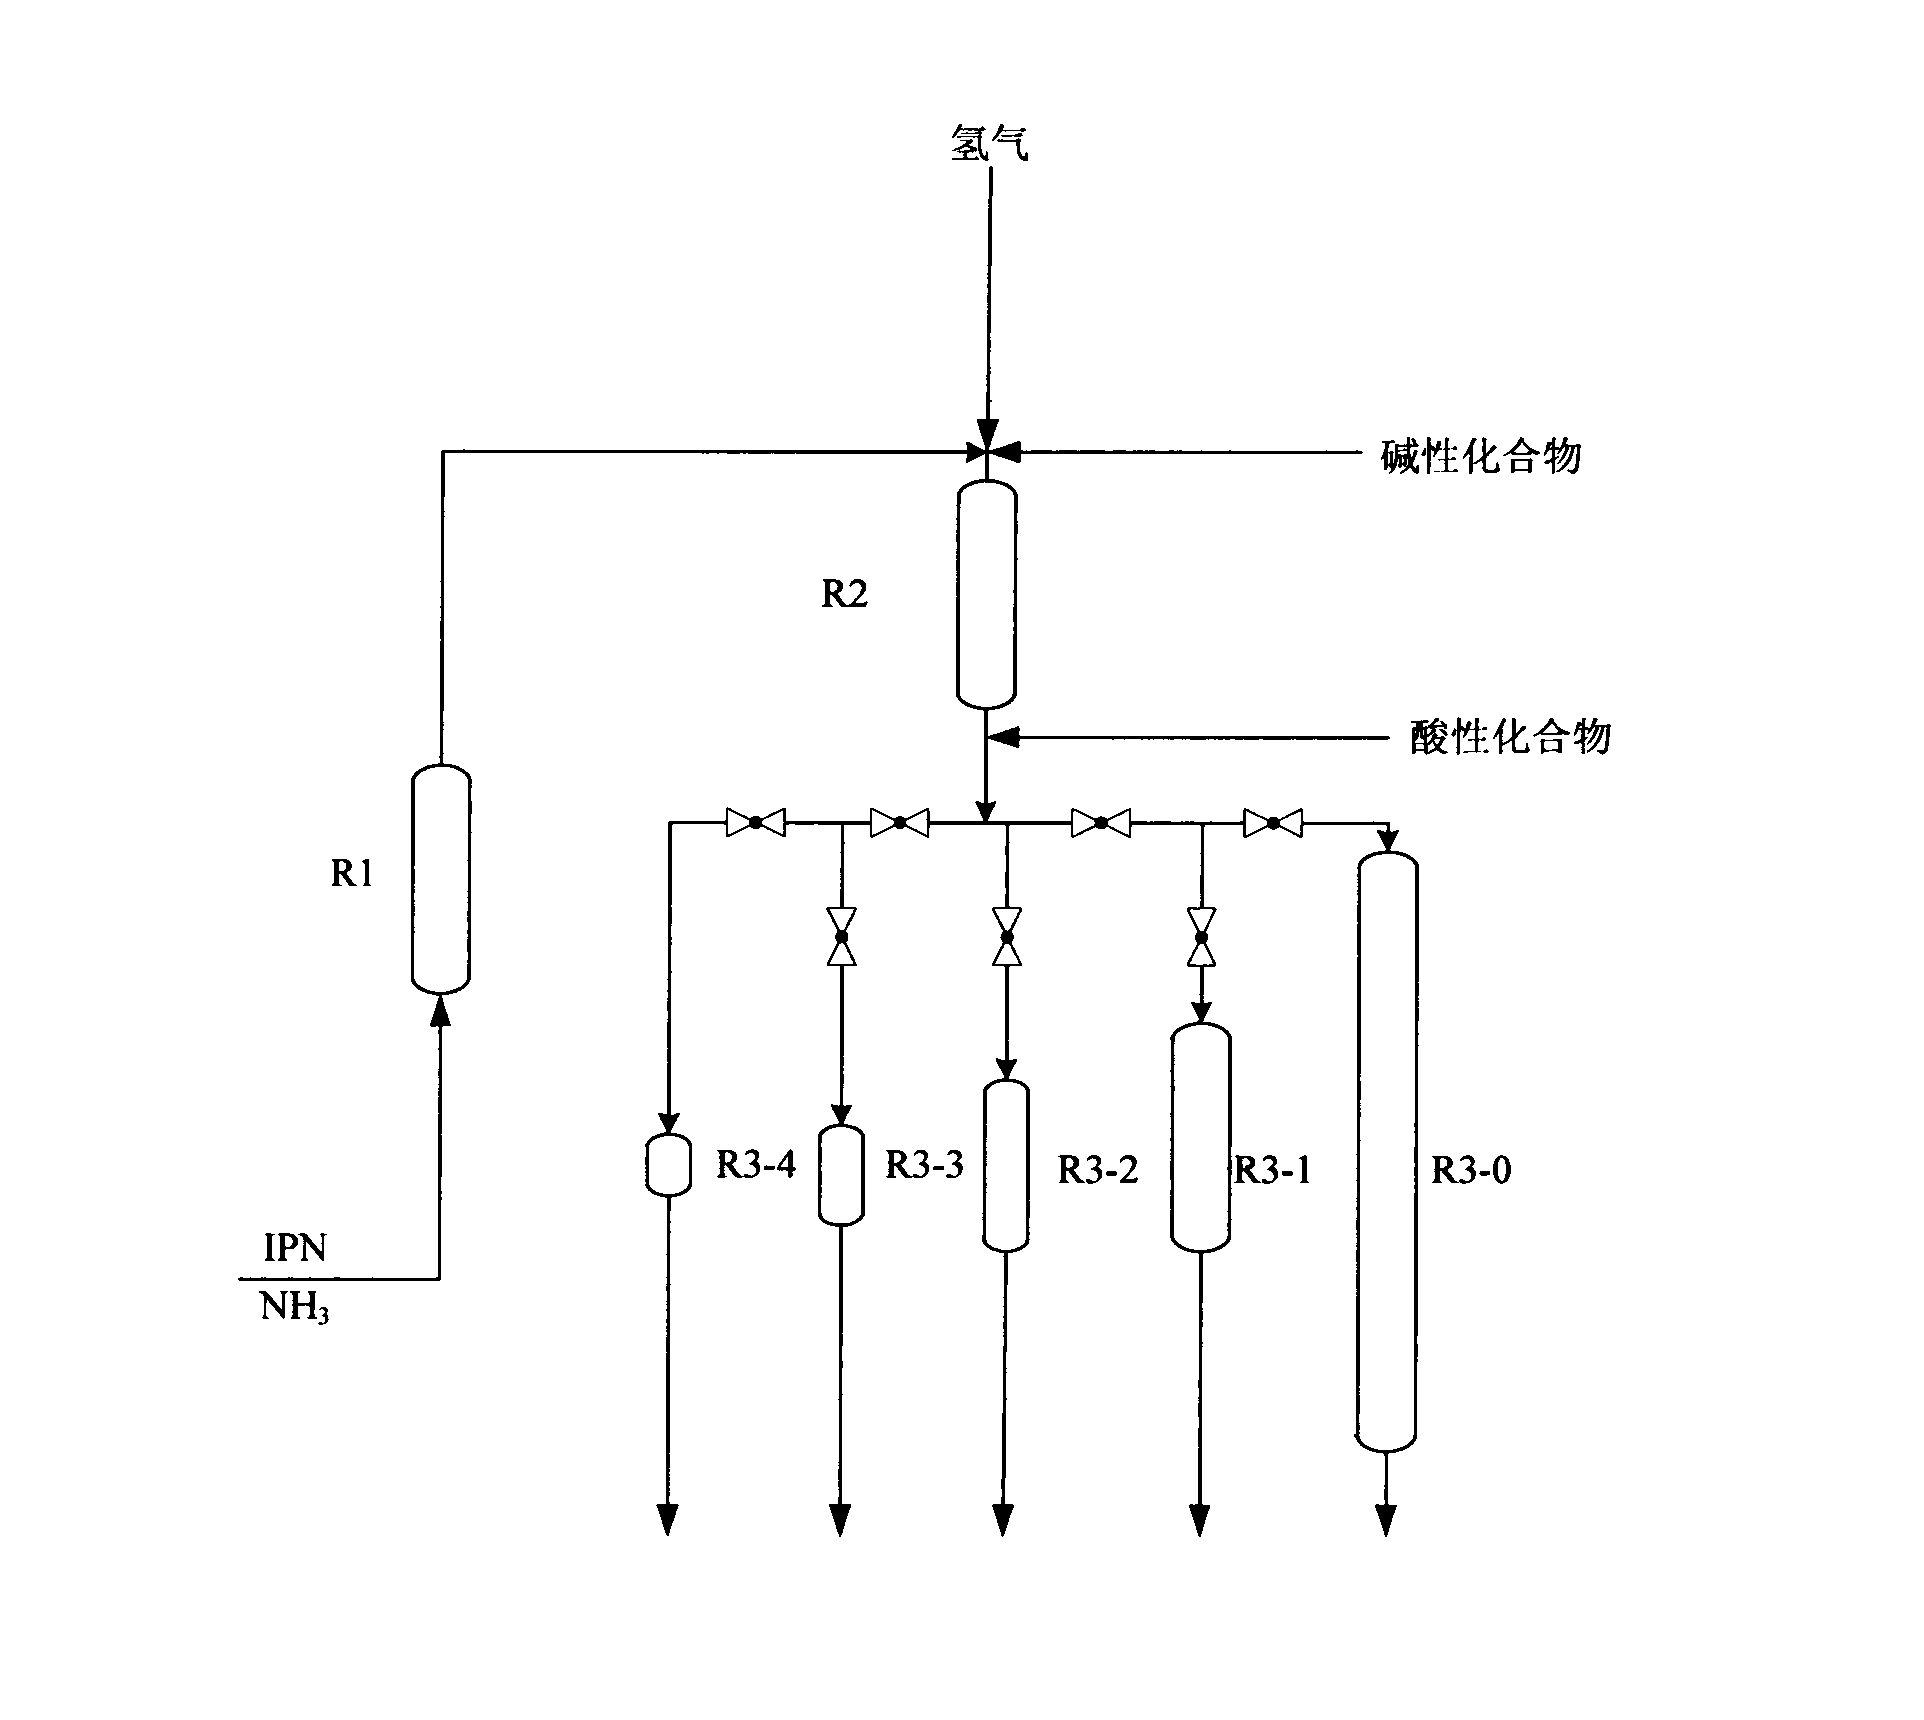 Preparation method of 3-aminomethyl-3,5,5-trimethylcyclohexylamine